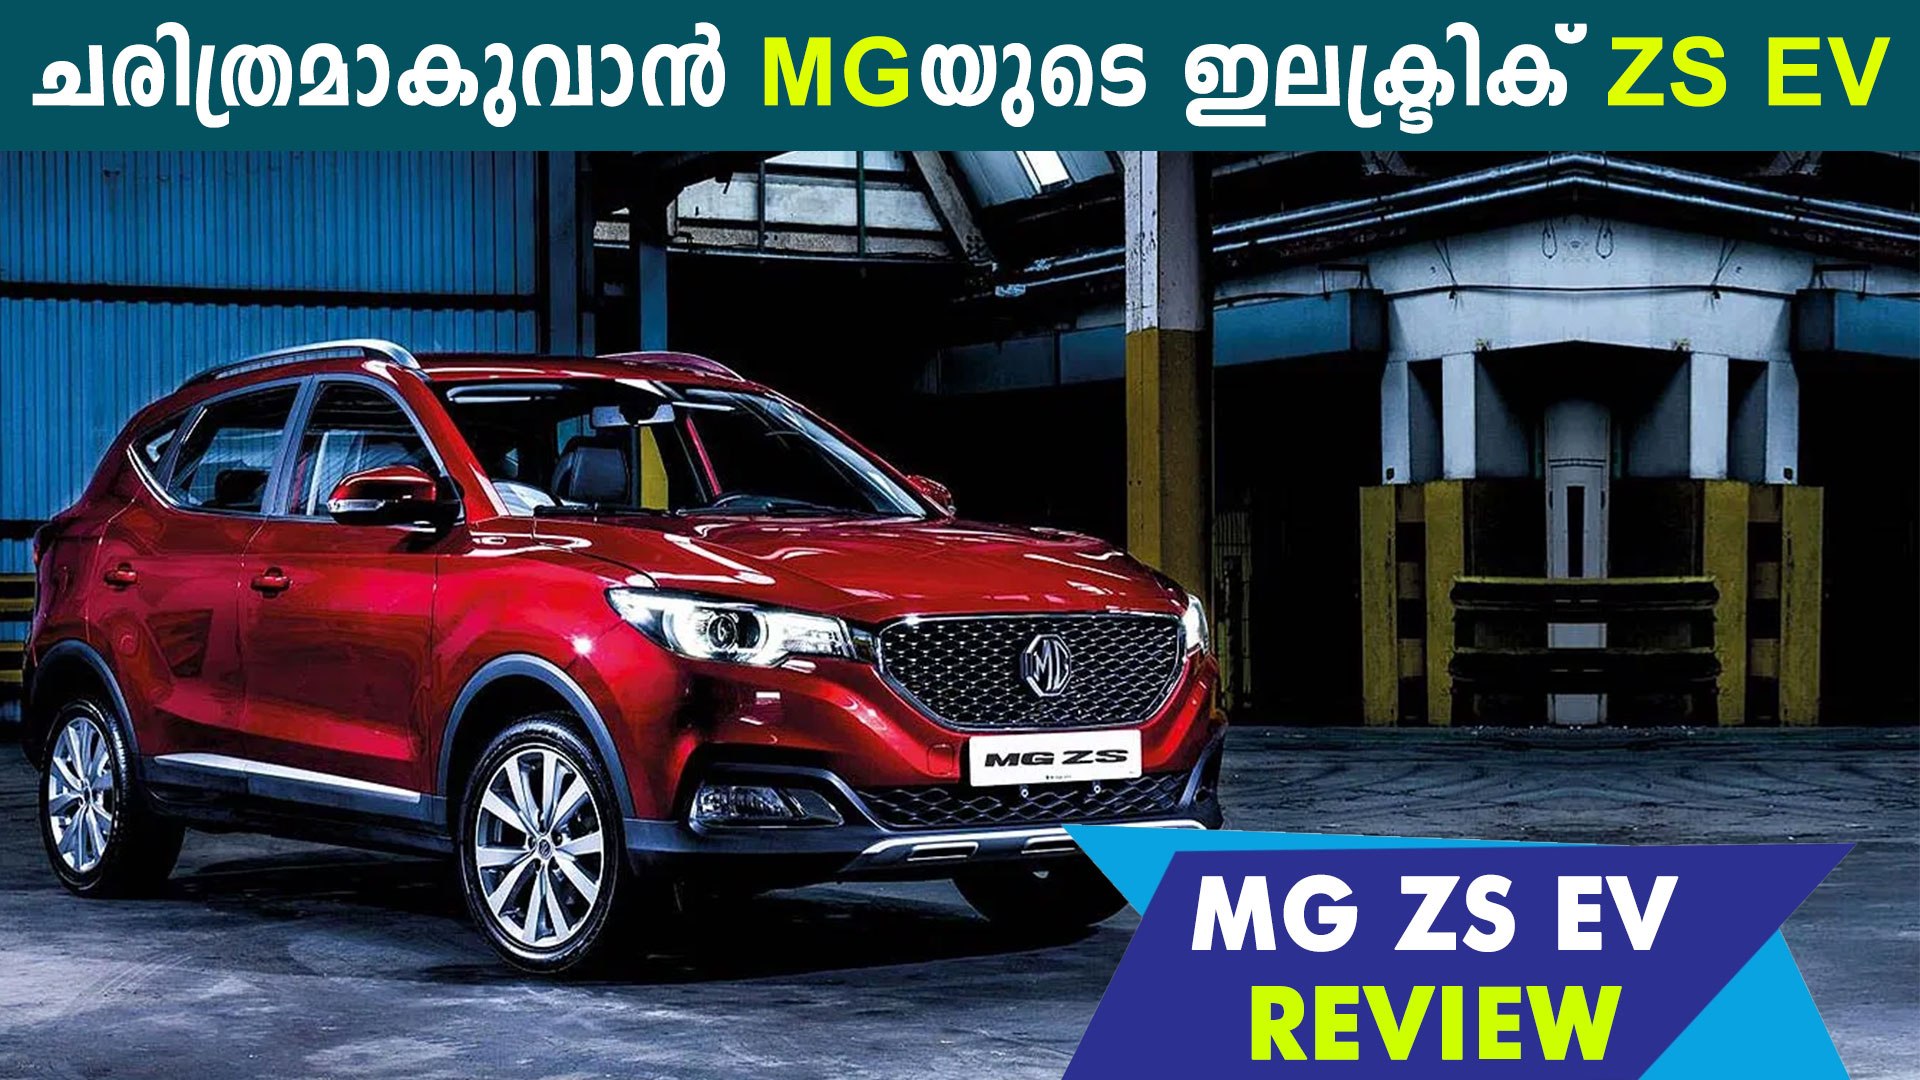 Mg Zs Ev Review In Malayalam Oneindia Malayalam